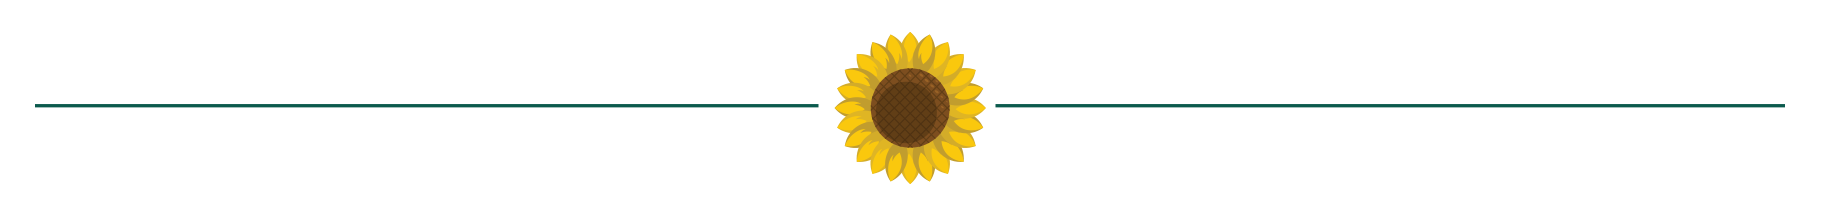 sunflower-divider.png